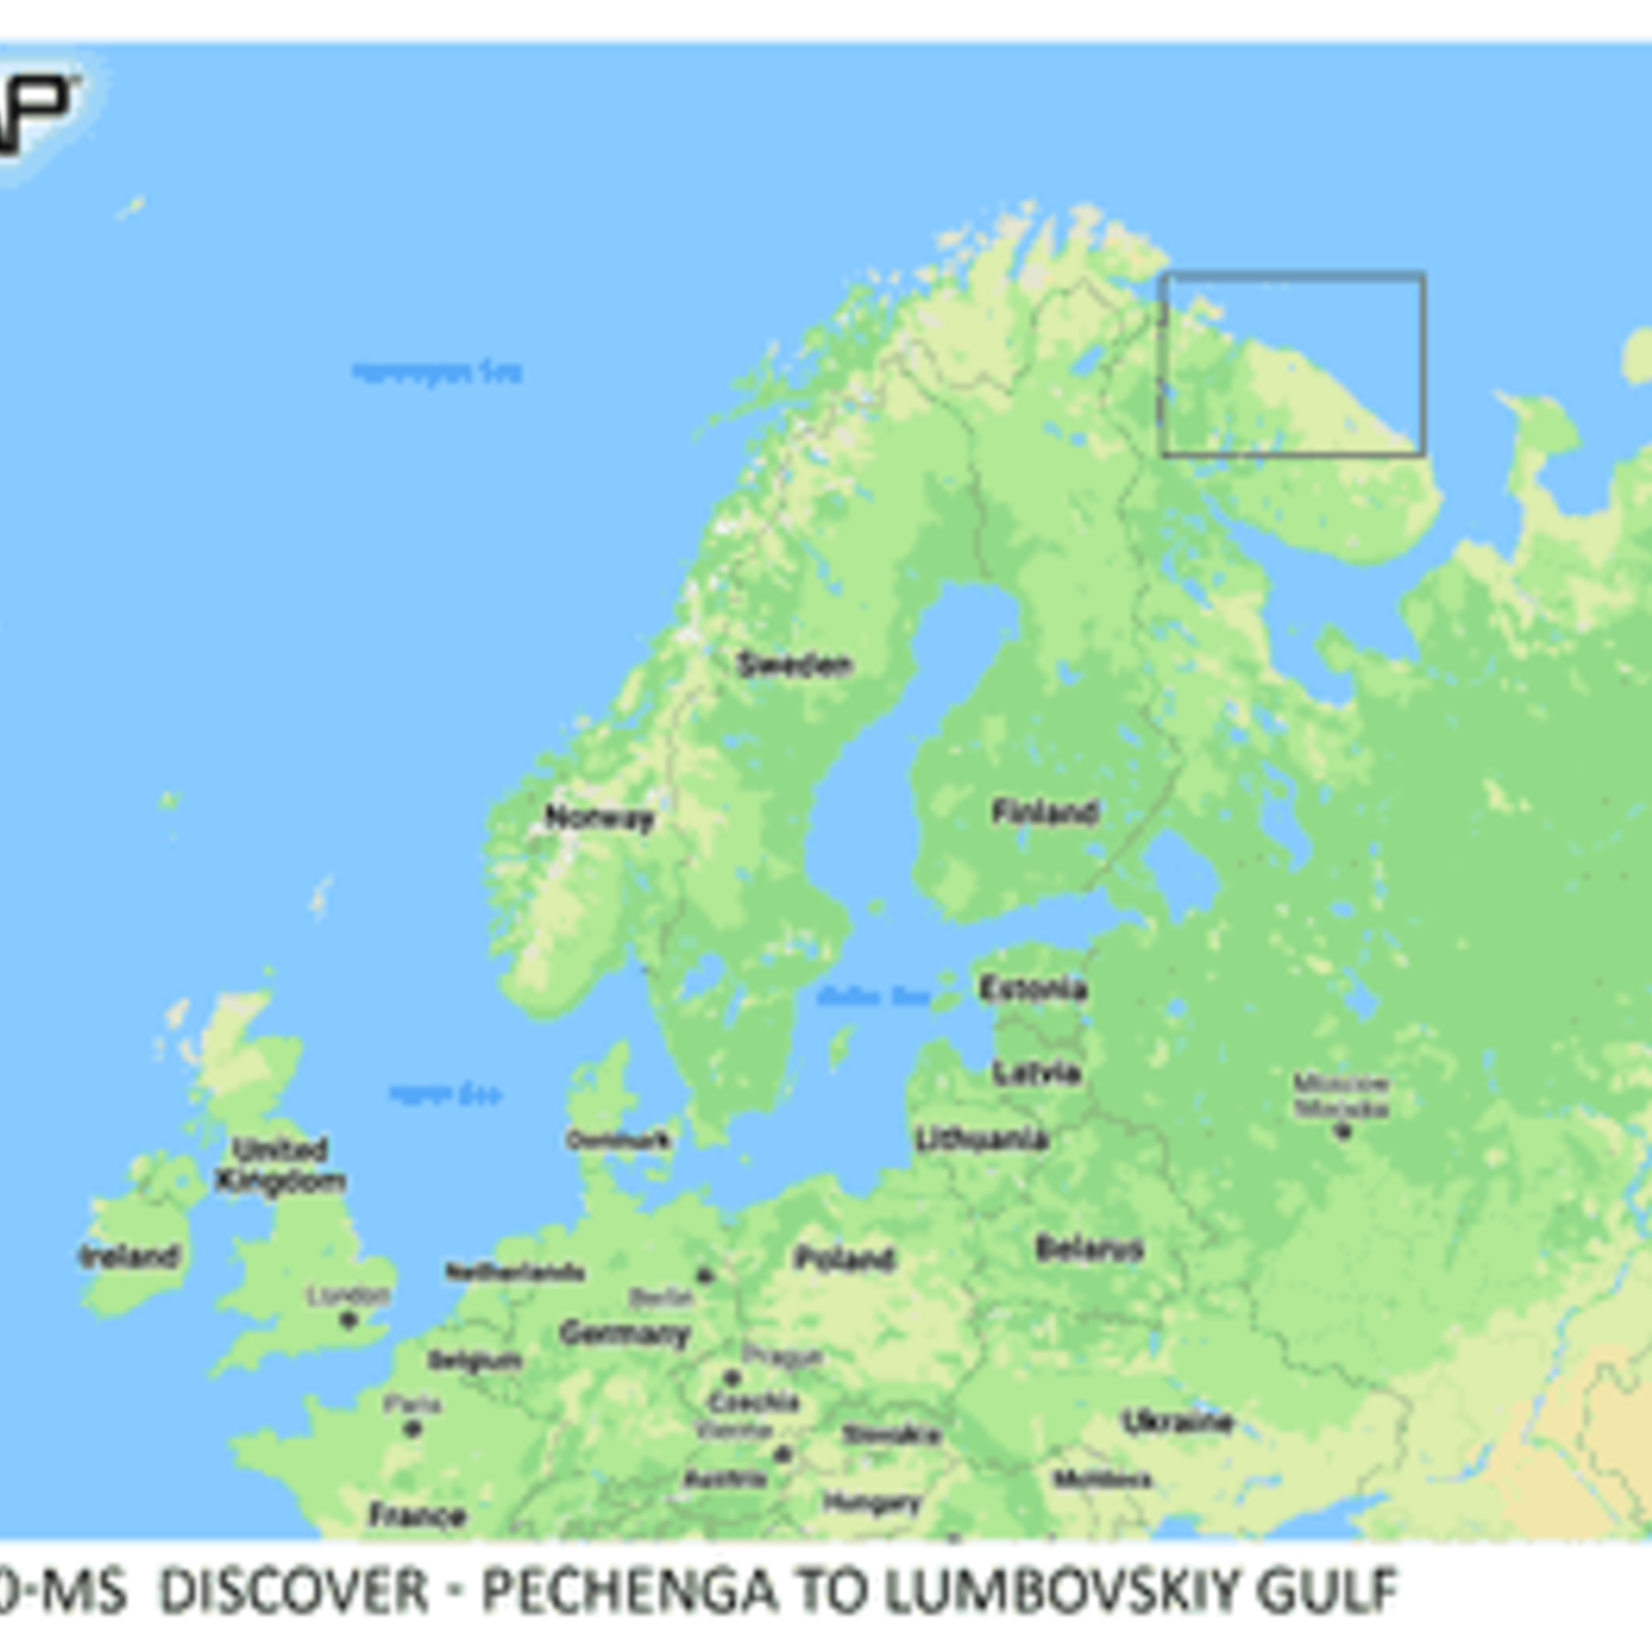 C-MAP DISCOVER - Pechenga to Lumbovskiy Gulf